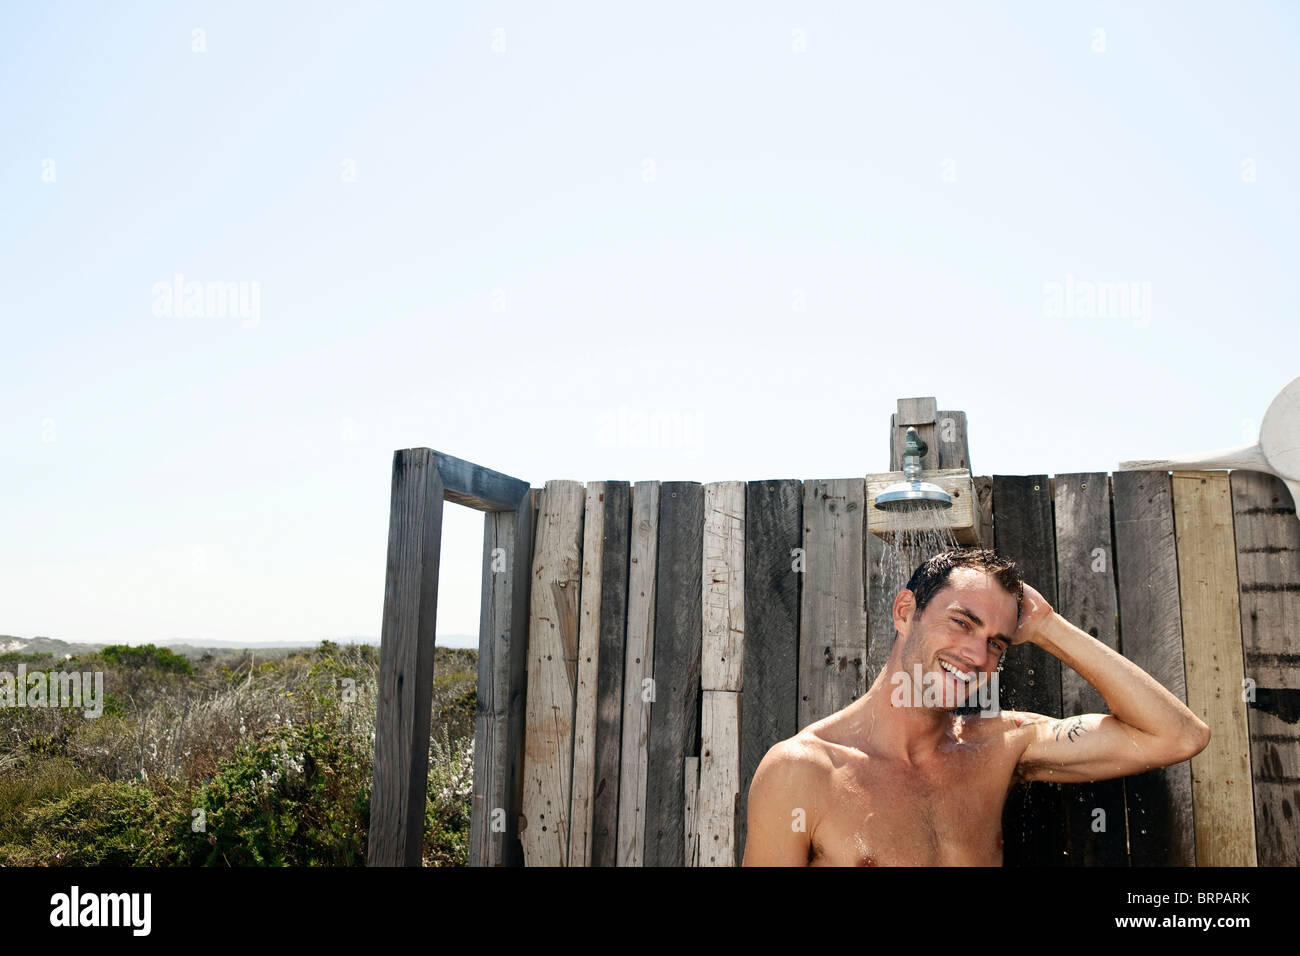 El hombre en la ducha en el campo Fotografía de stock - Alamy